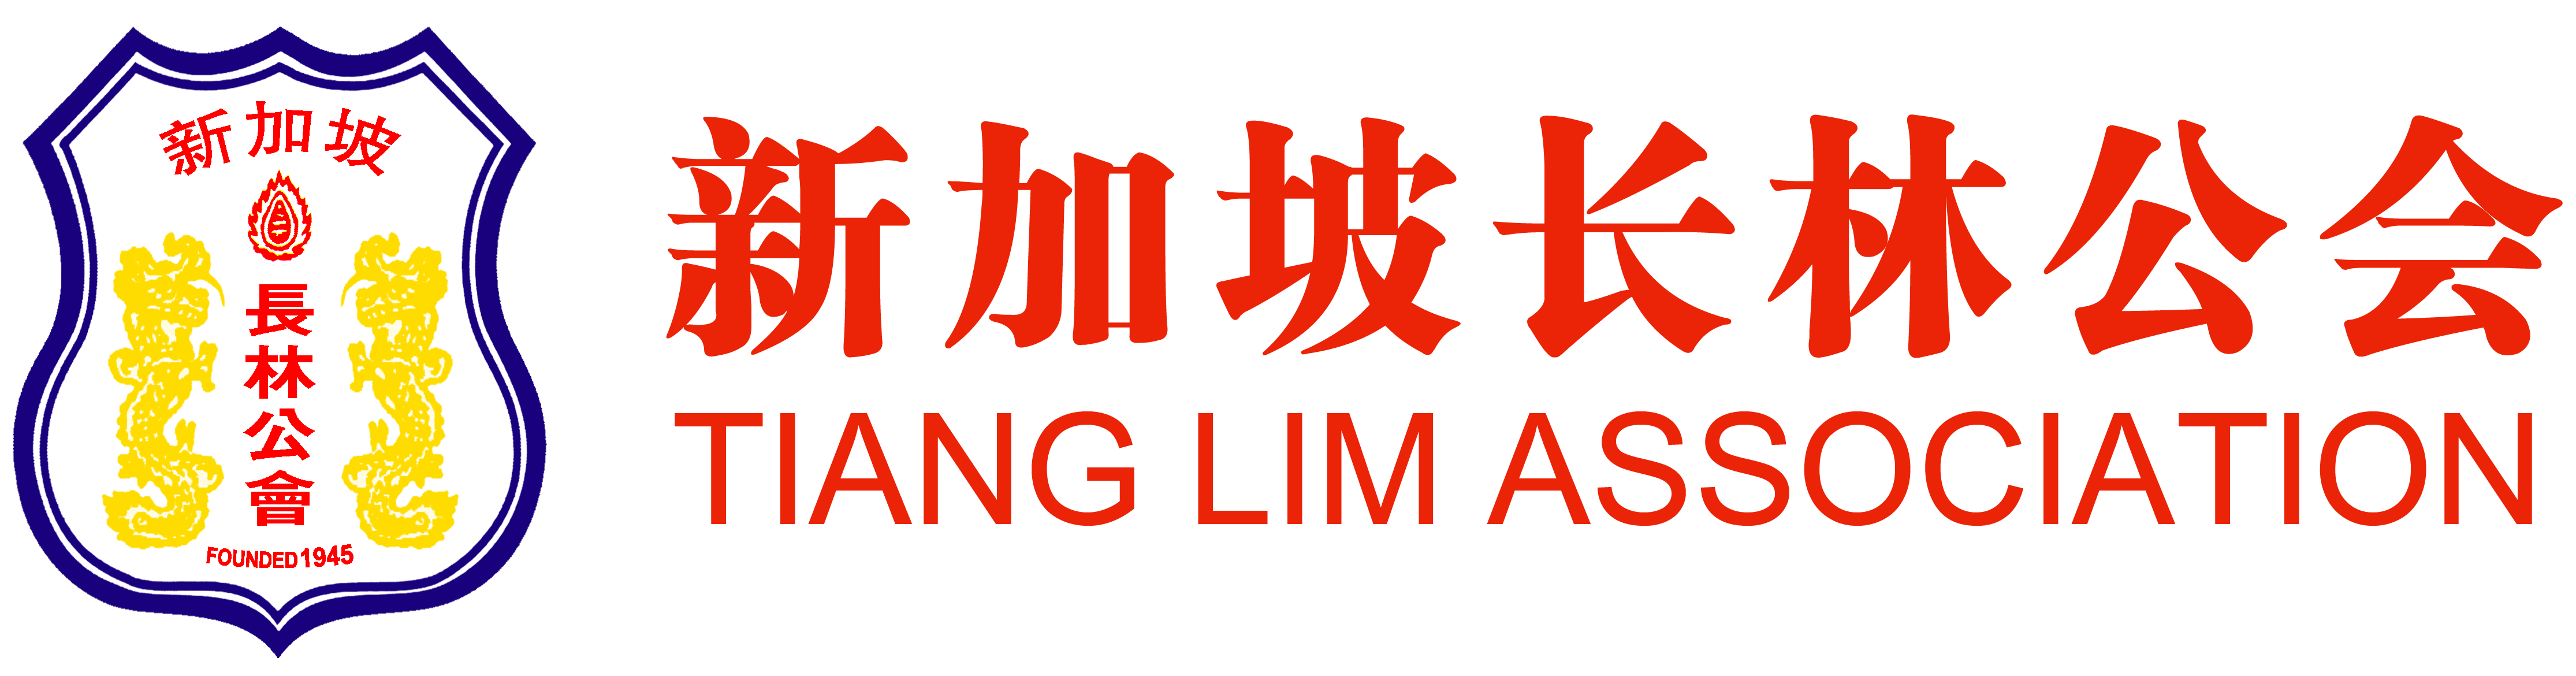 Tiang Lim Association